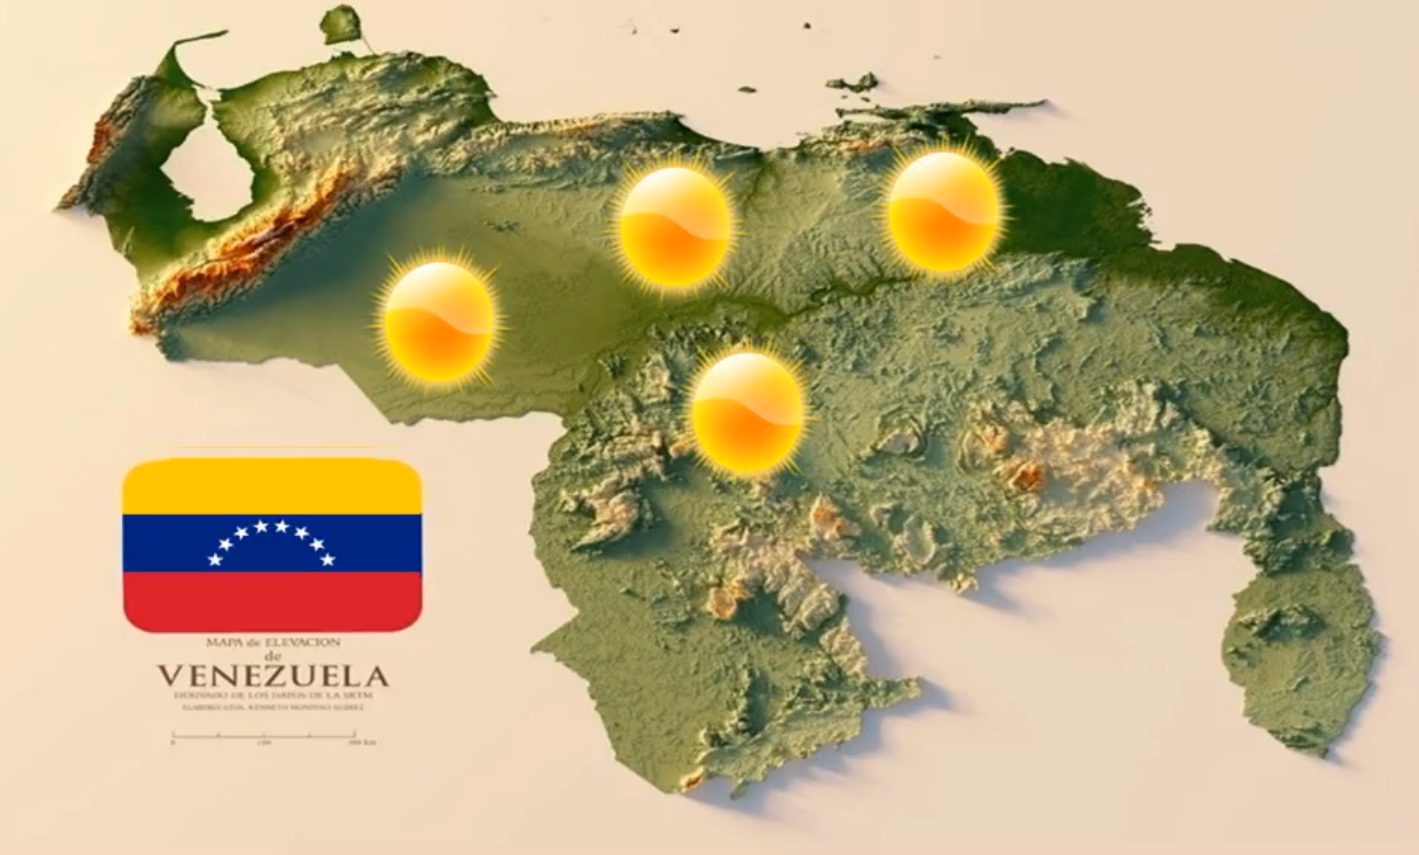 Inameh pronosticó cielo despejado en gran parte de Venezuela este #16Mar